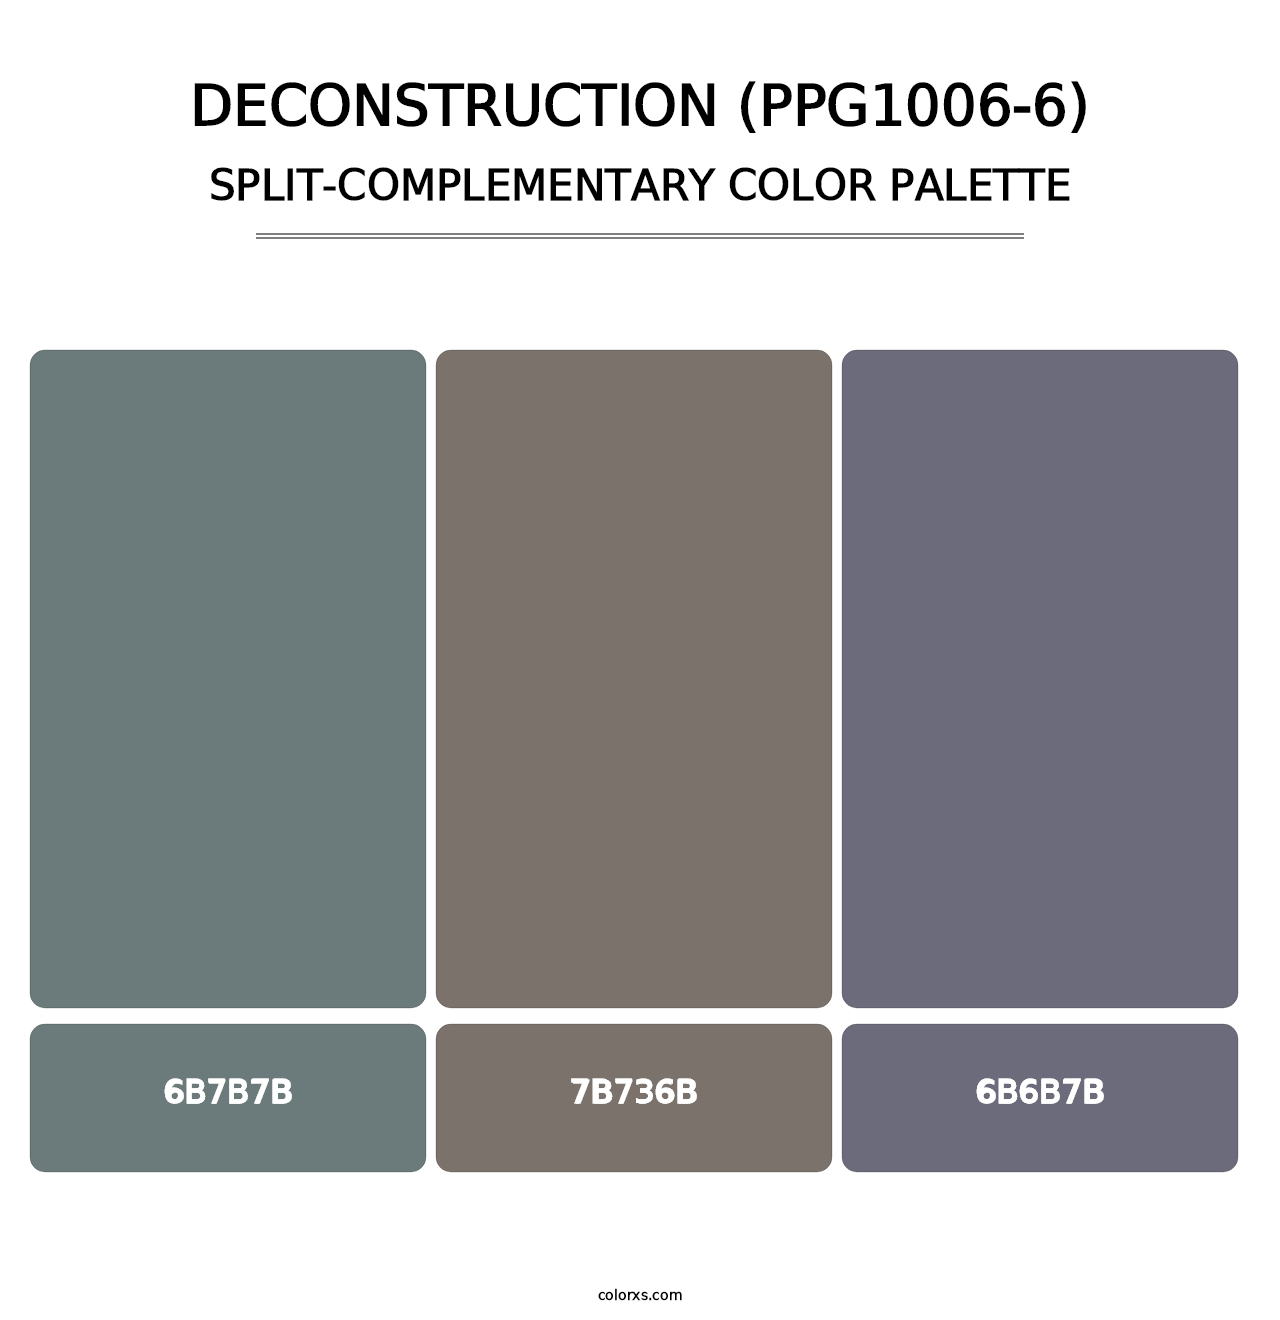 Deconstruction (PPG1006-6) - Split-Complementary Color Palette